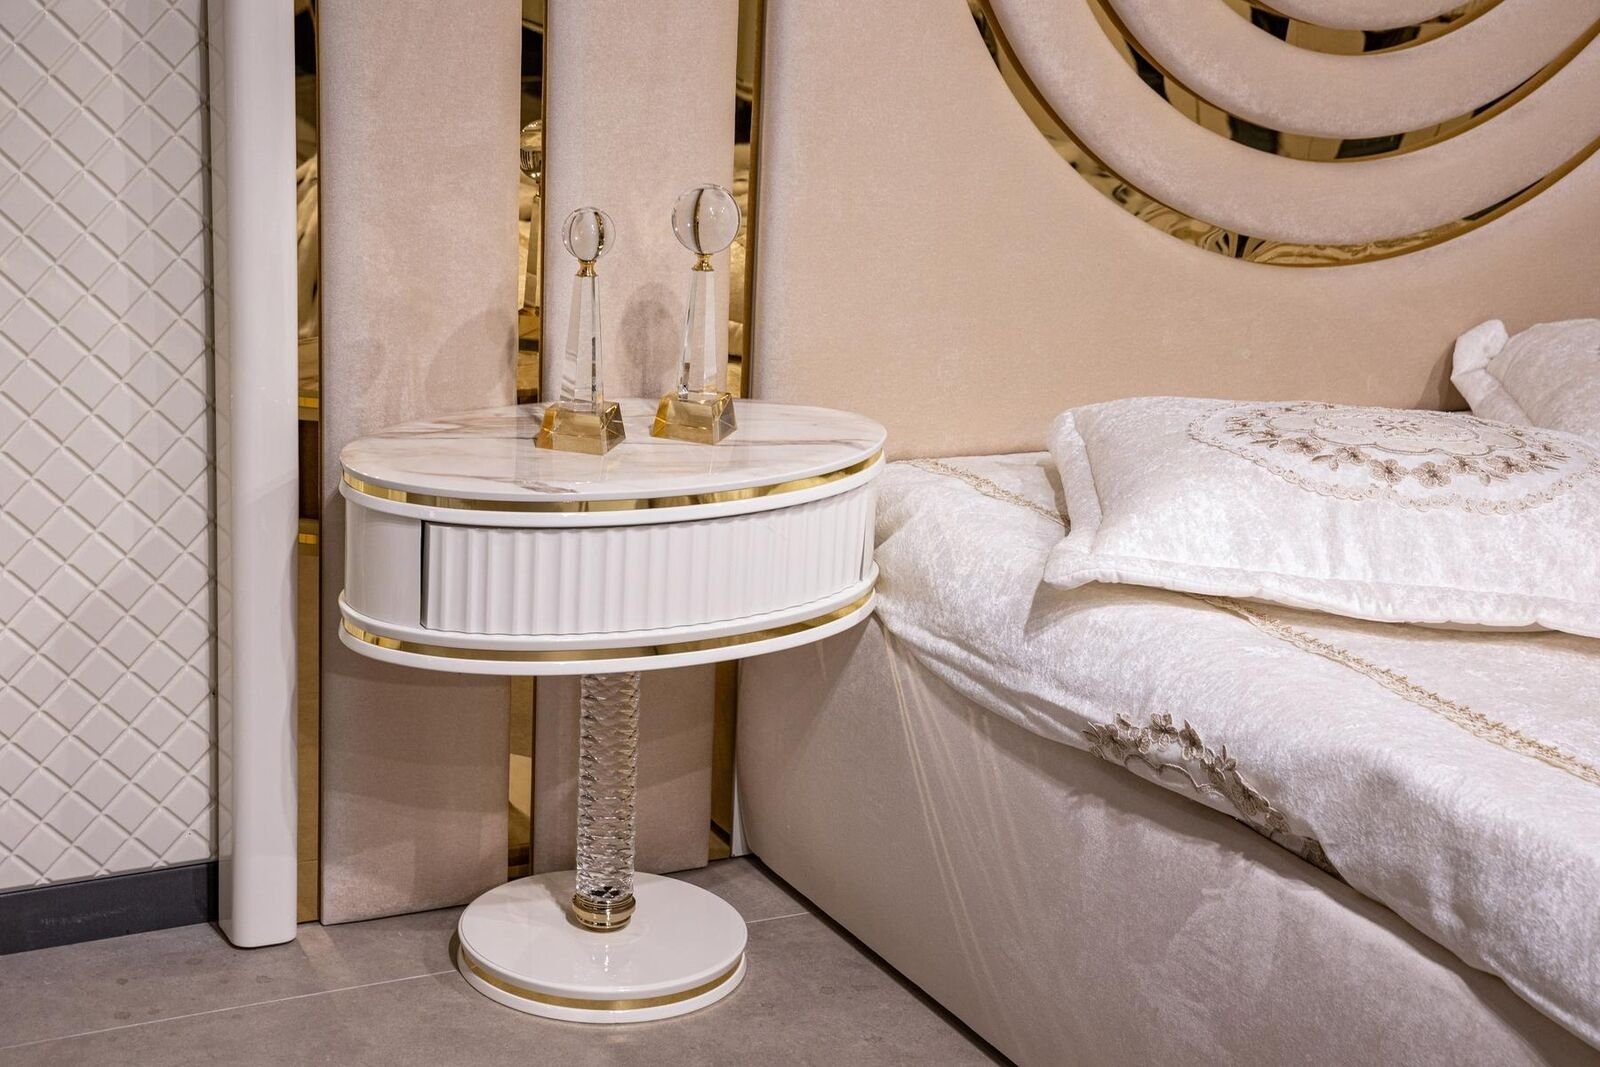 Set JVmoebel 2x Schlafzimmer-Set Europe Modern Made Nachttische In Bett Design, Kleiderschrank Schlafzimmer